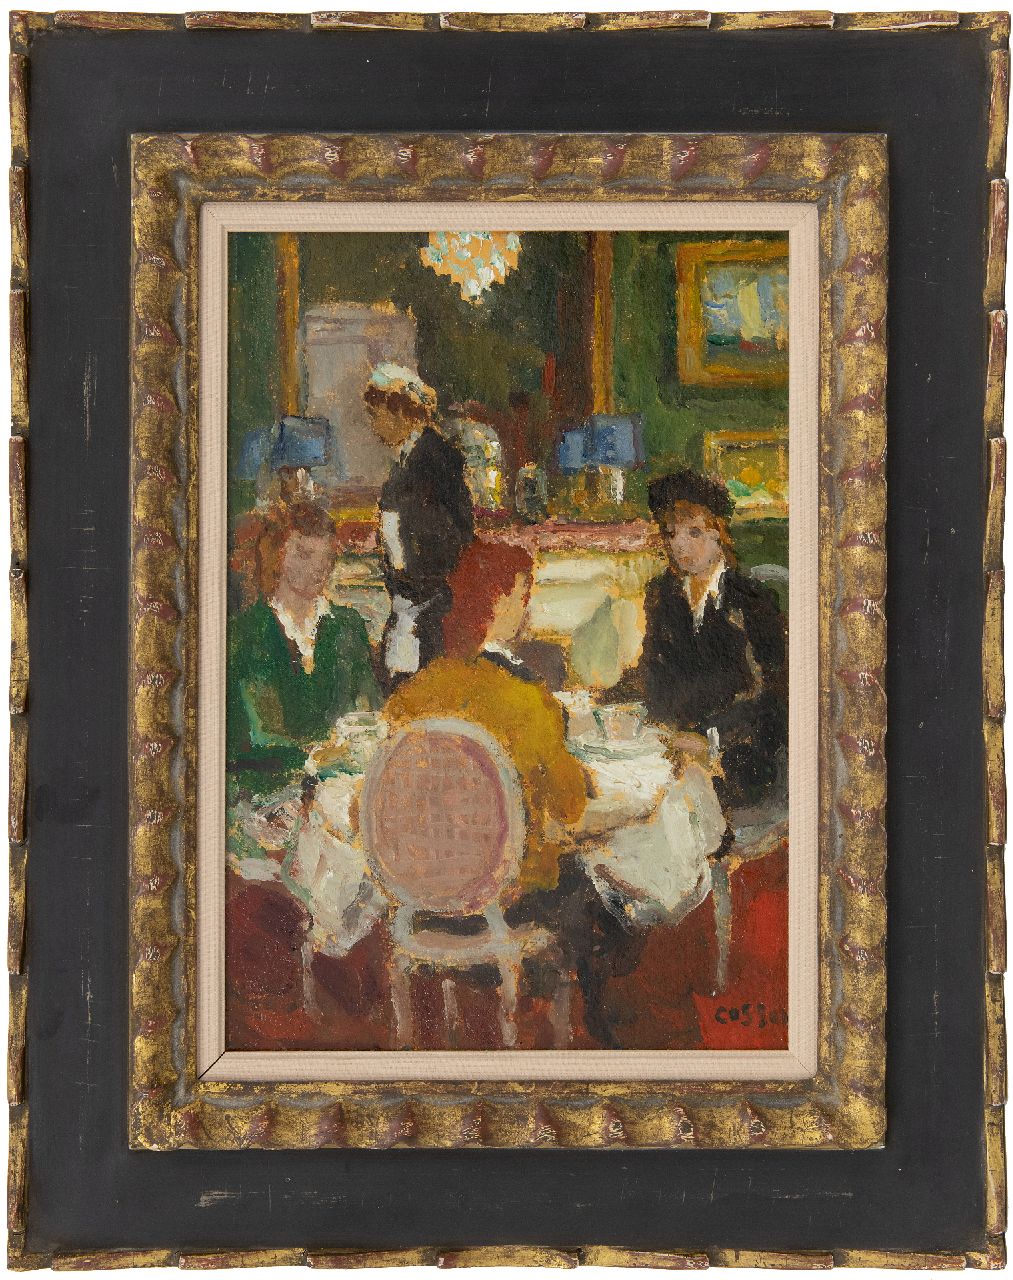 Cosson J.L.M.  | Jean Louis 'Marcel' Cosson | Schilderijen te koop aangeboden | In het restaurant, olieverf op schildersboard 34,8 x 24,1 cm, gesigneerd rechtsonder